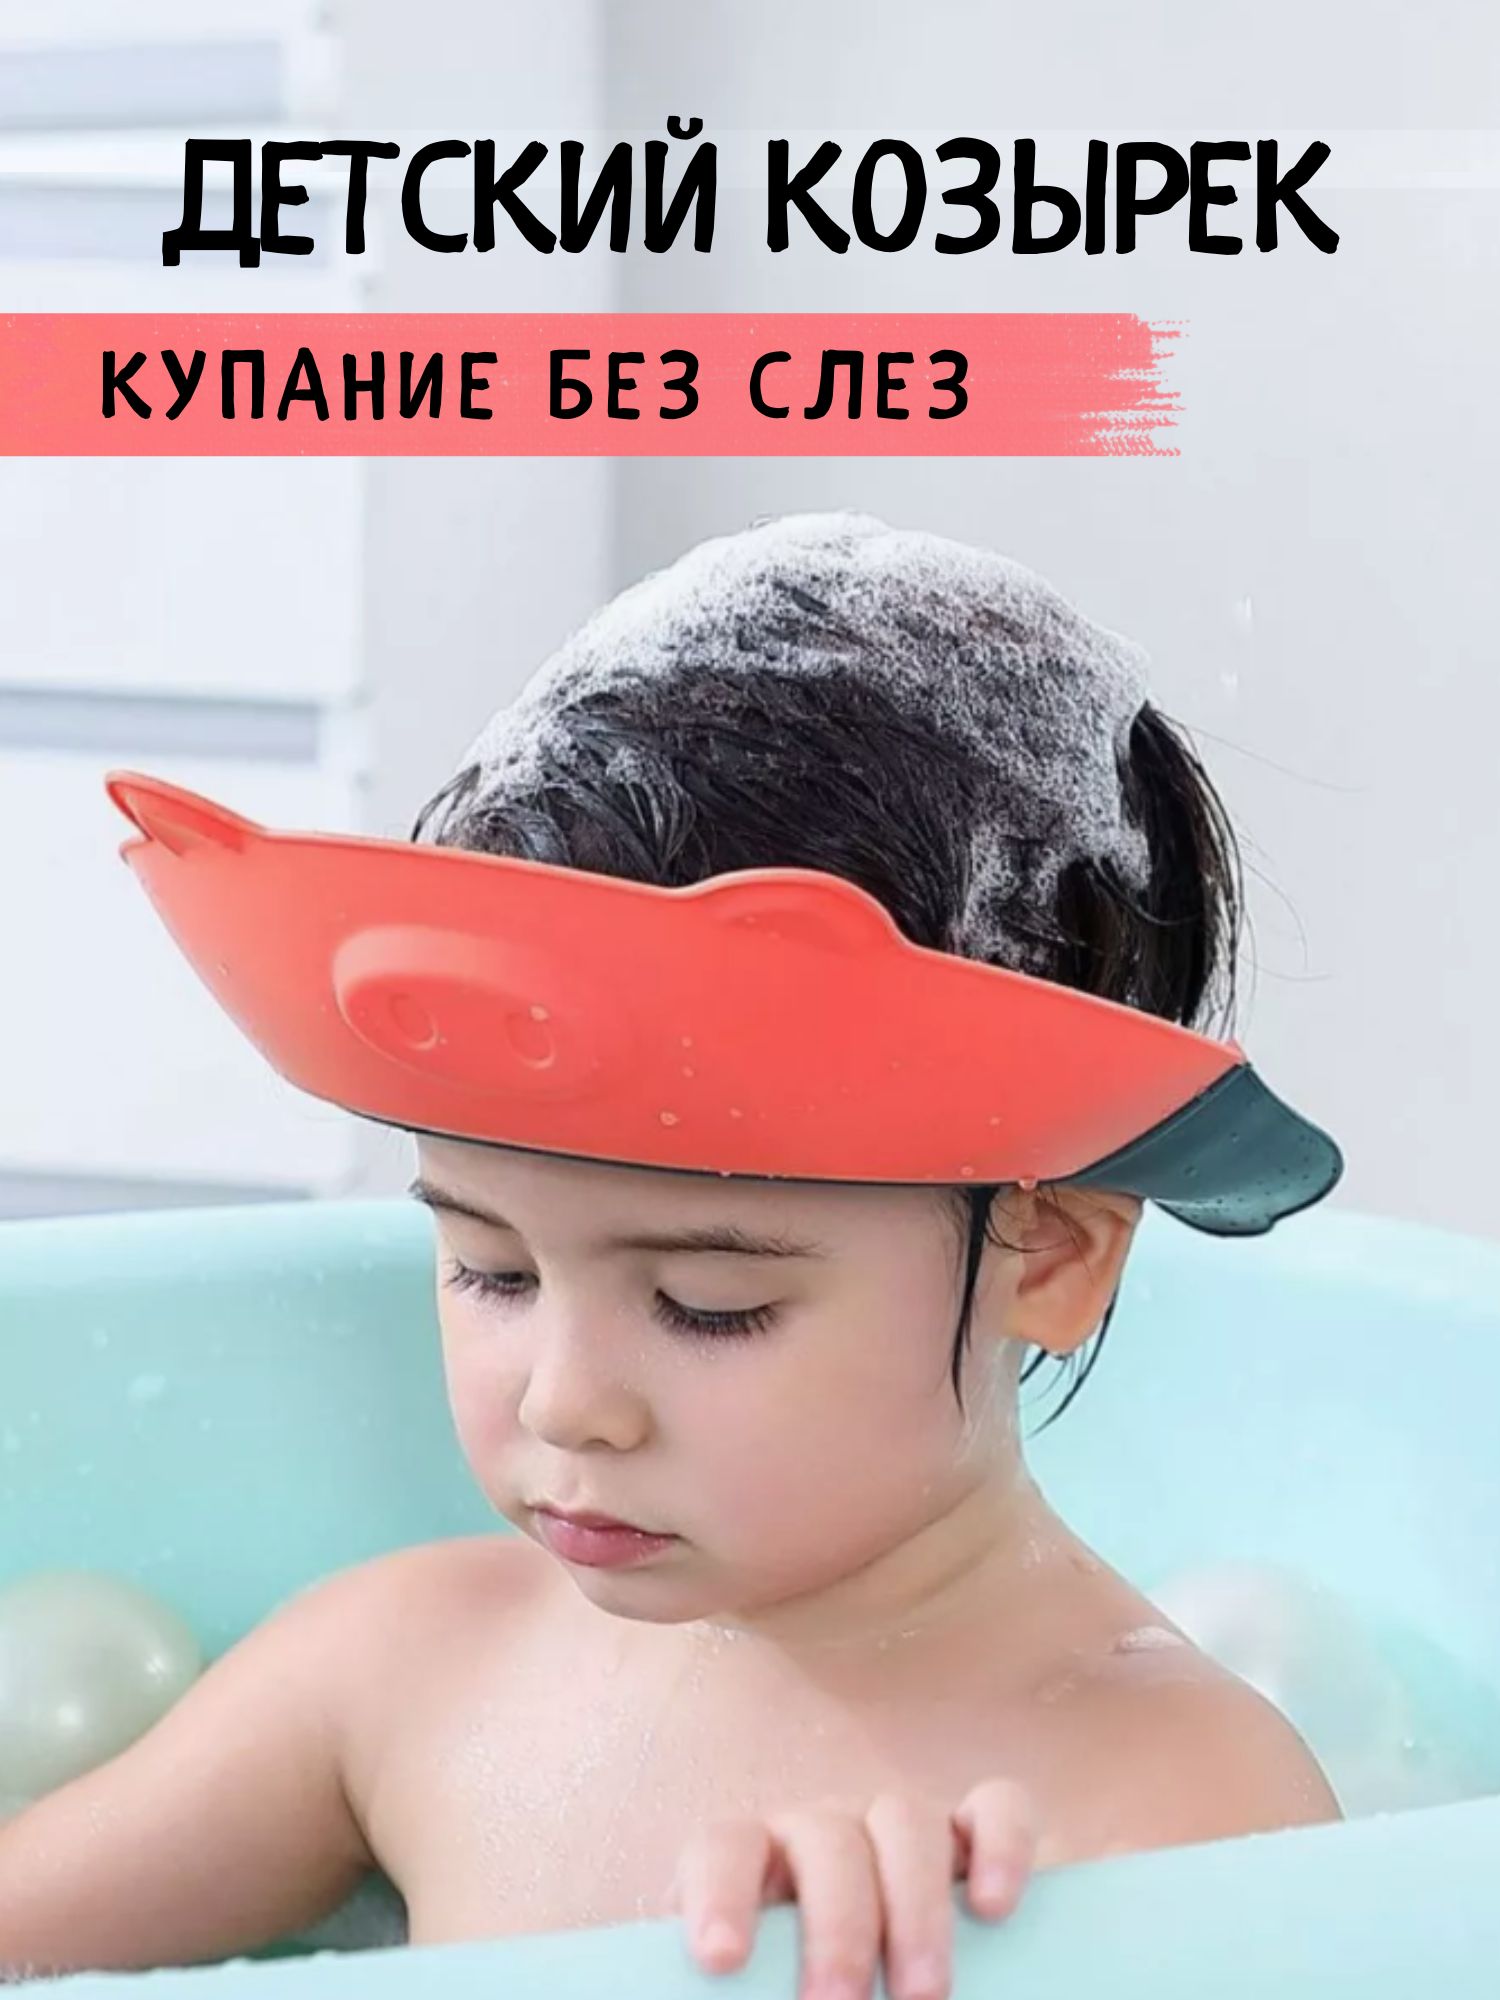 Защитный козырек ободок для купания и мытья головы детский губка для купания карапуз maxi красный 55х30